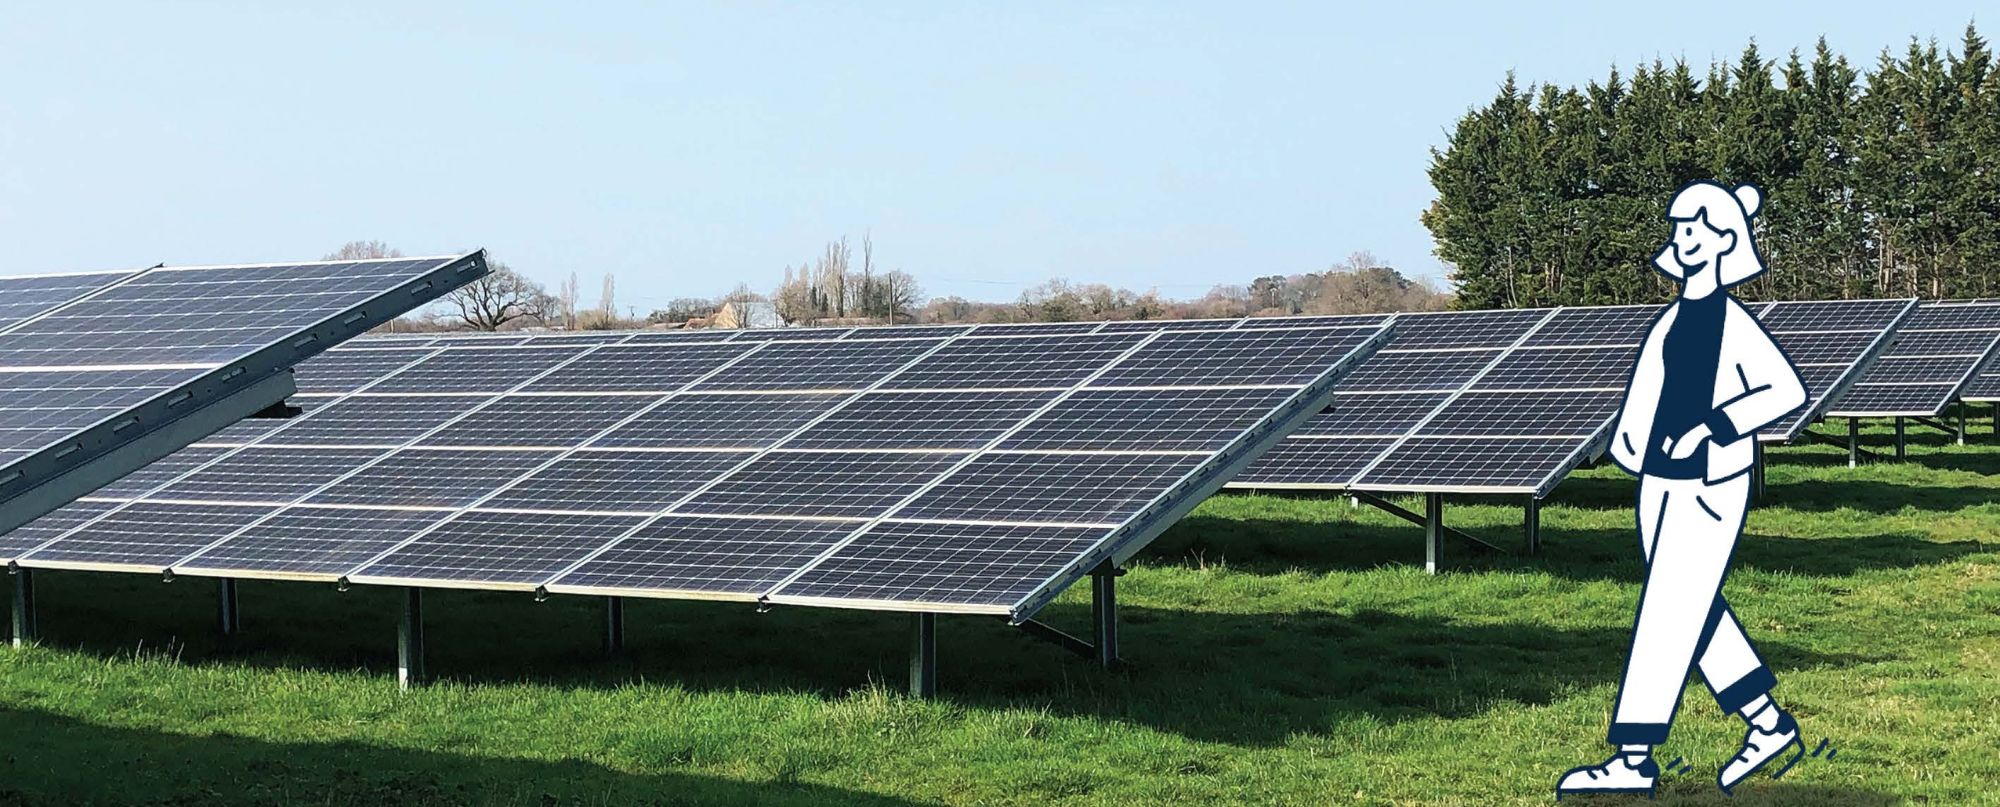 Réparation de panneaux solaires La Roche-sur-Yon - ARS Energie